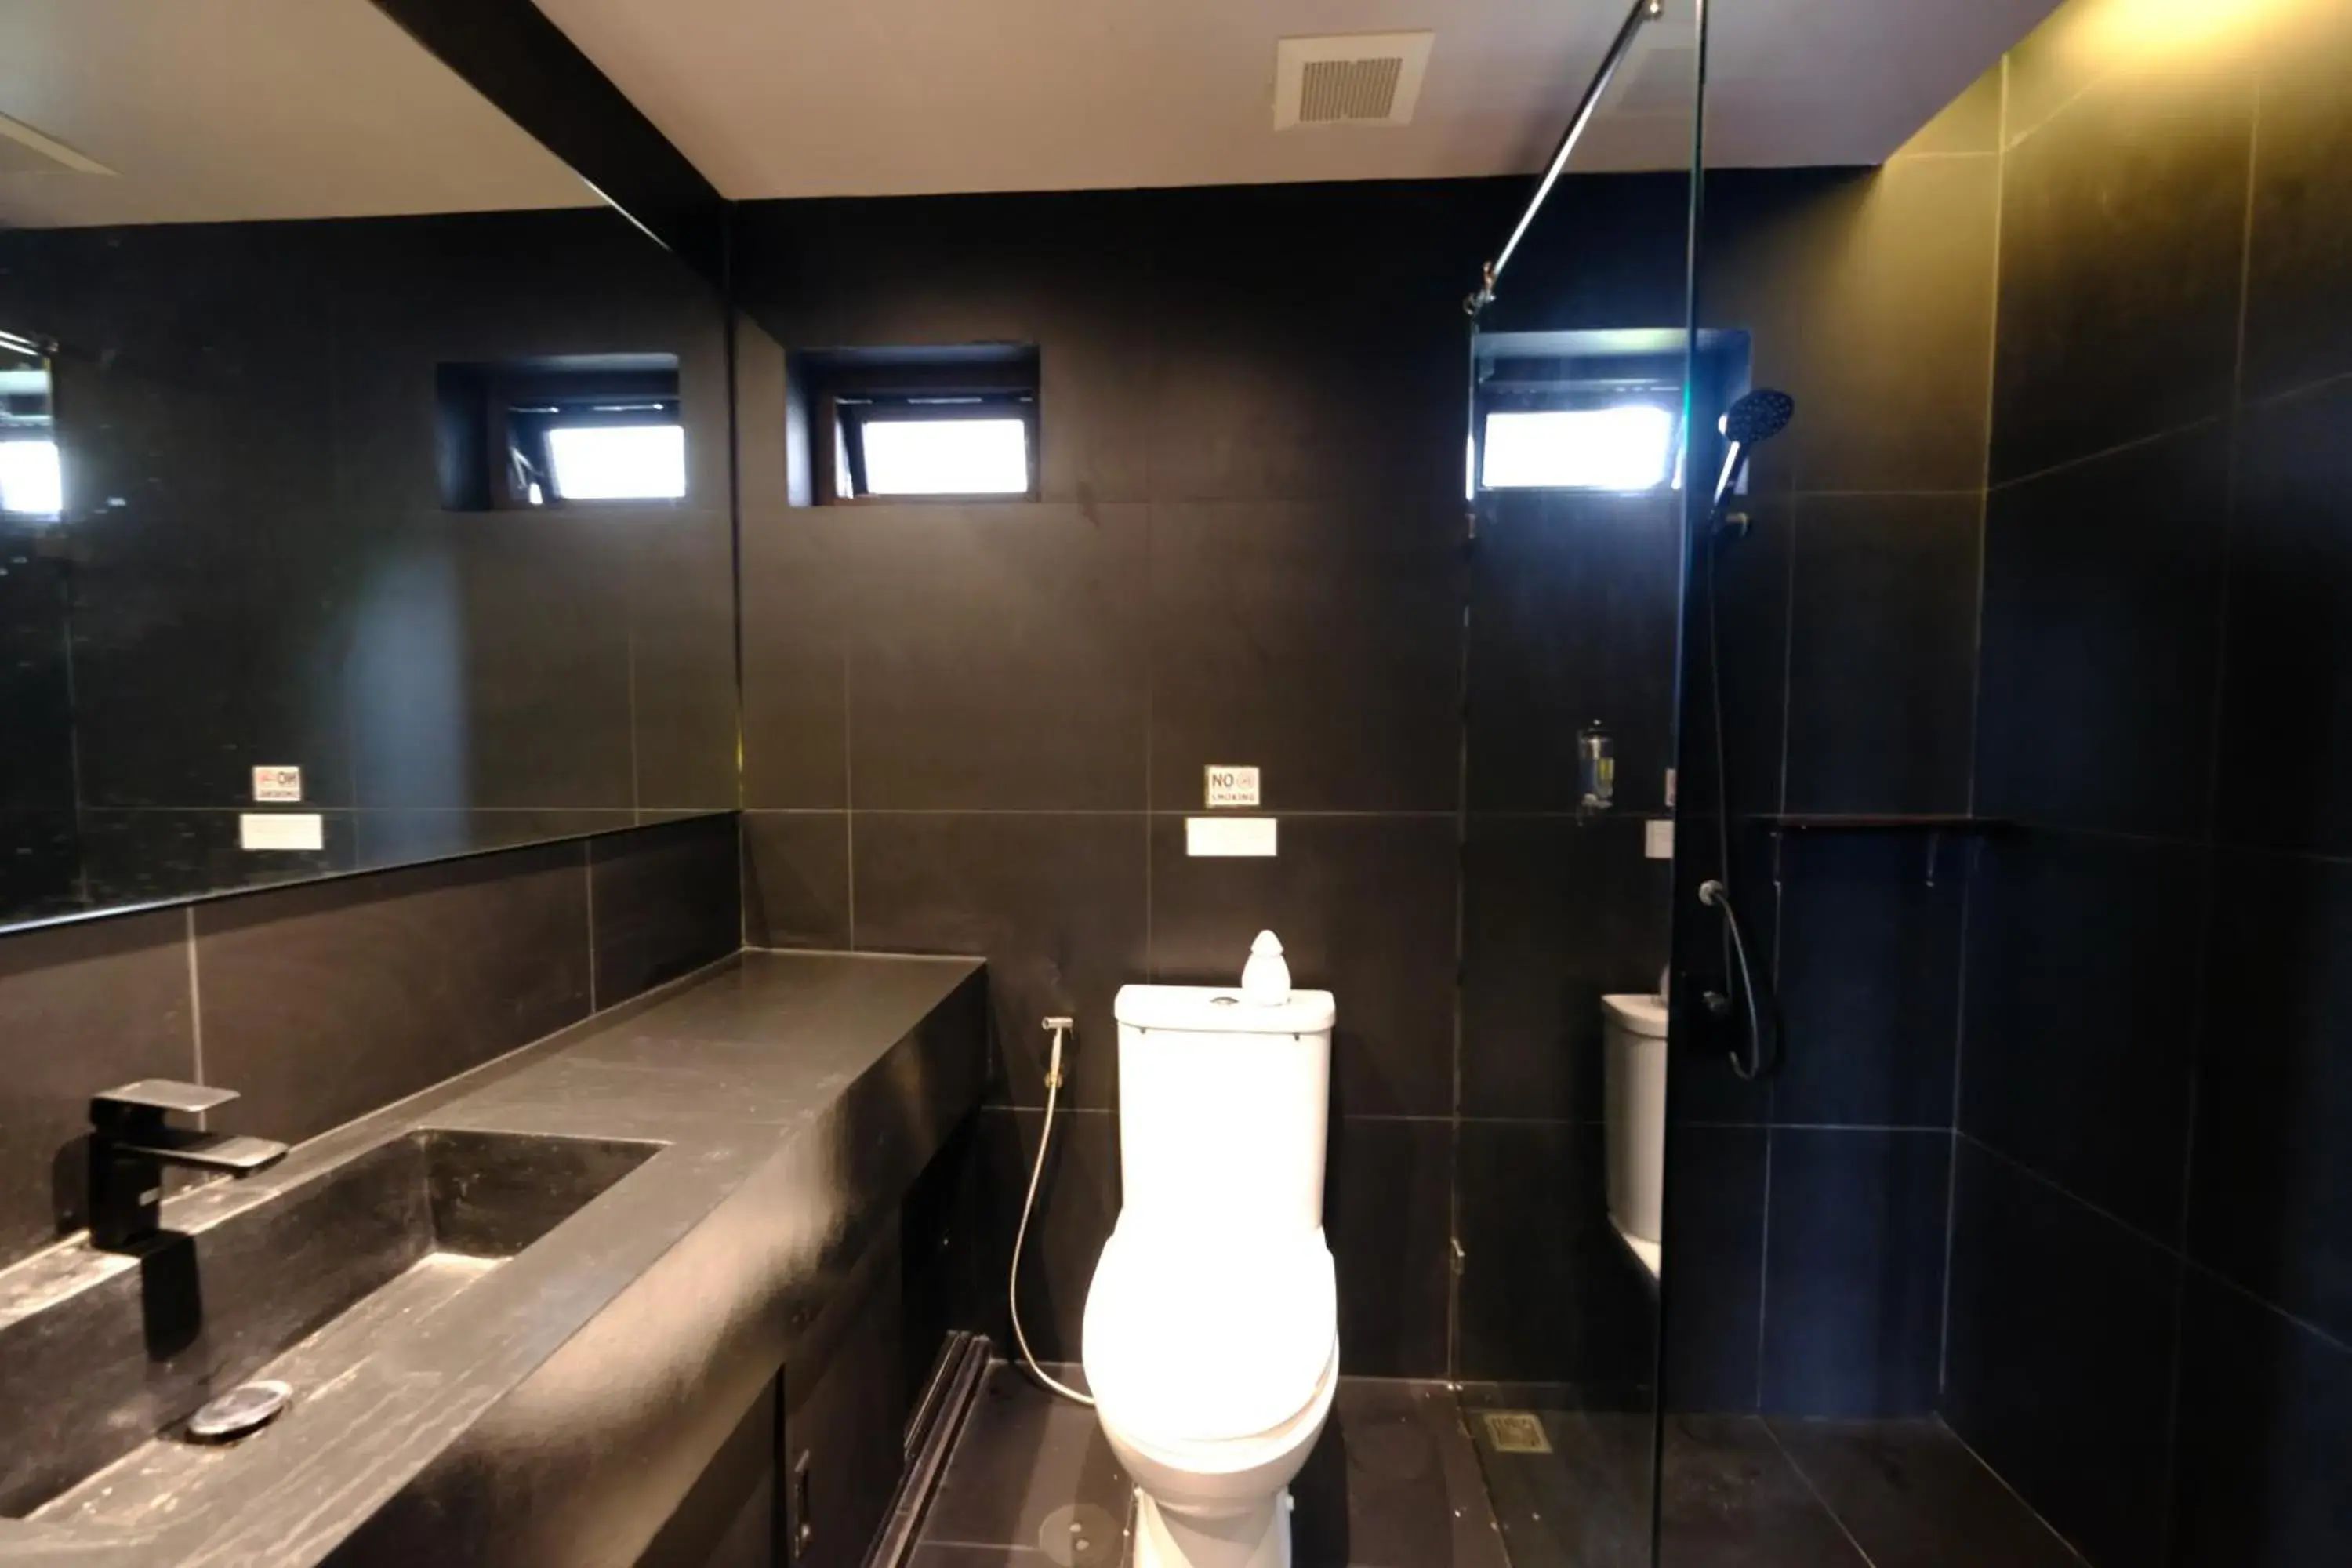 Shower, Bathroom in Kloem Hostel